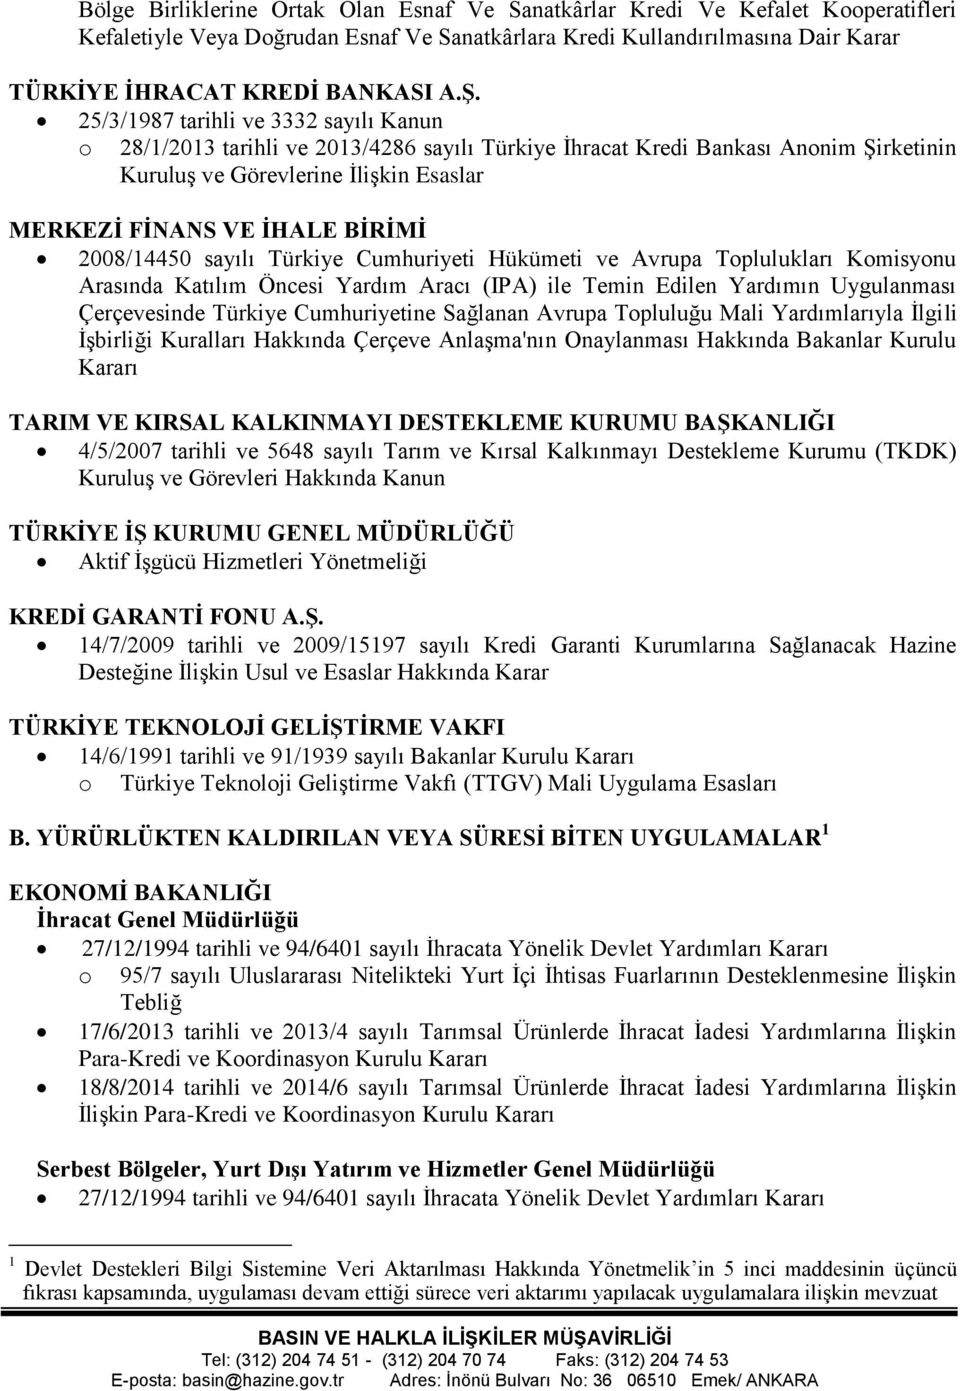 2008/14450 sayılı Türkiye Cumhuriyeti Hükümeti ve Avrupa Toplulukları Komisyonu Arasında Katılım Öncesi Yardım Aracı (IPA) ile Temin Edilen Yardımın Uygulanması Çerçevesinde Türkiye Cumhuriyetine